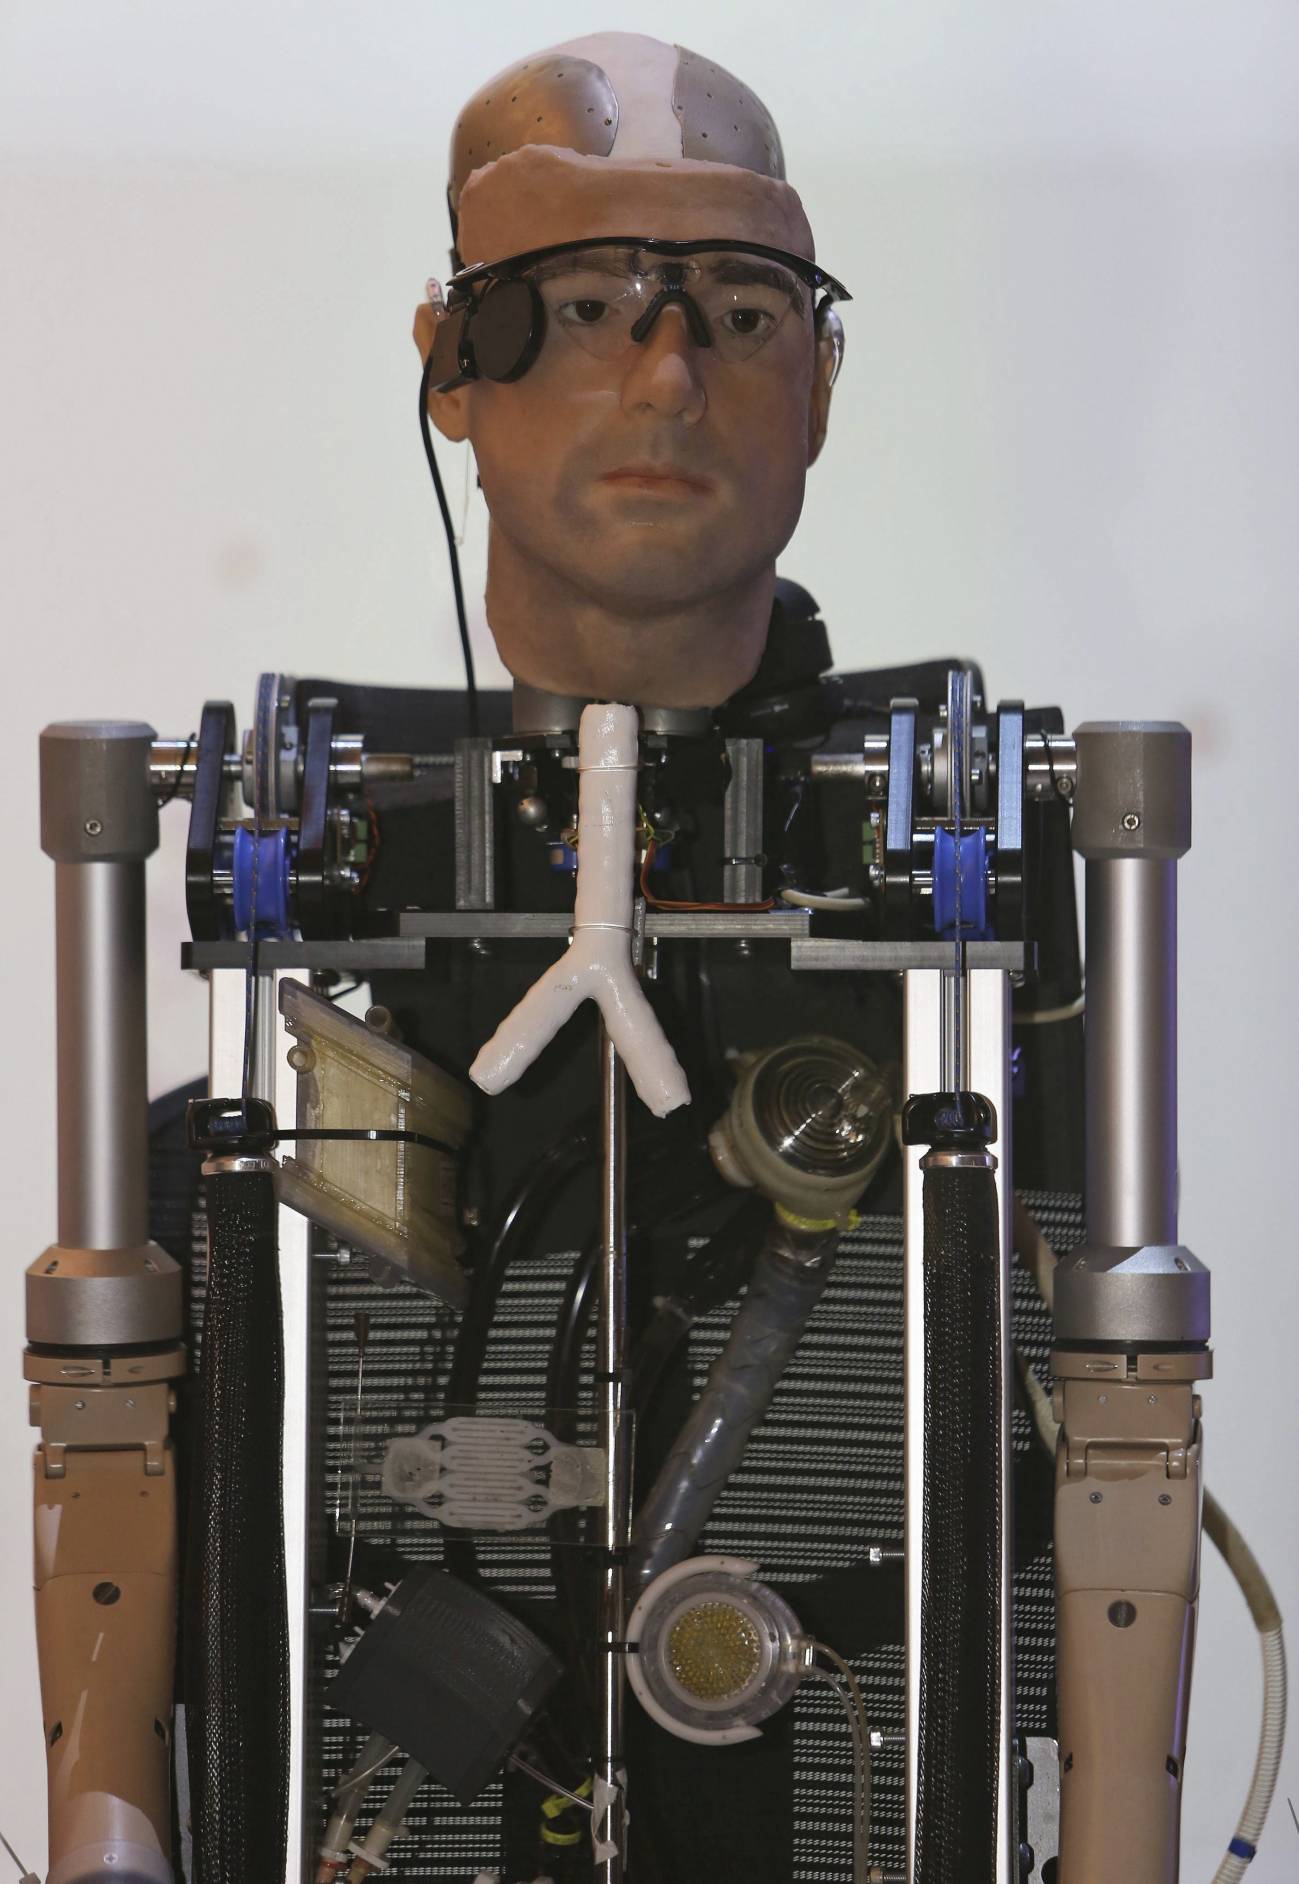 El primer "hombre biónico" completo durante su presentación e Reino Unido. El robot, con una altura de dos metros y valorado en un millón de dólares, se expone en el Museo de Ciencias de Londres. / Efe